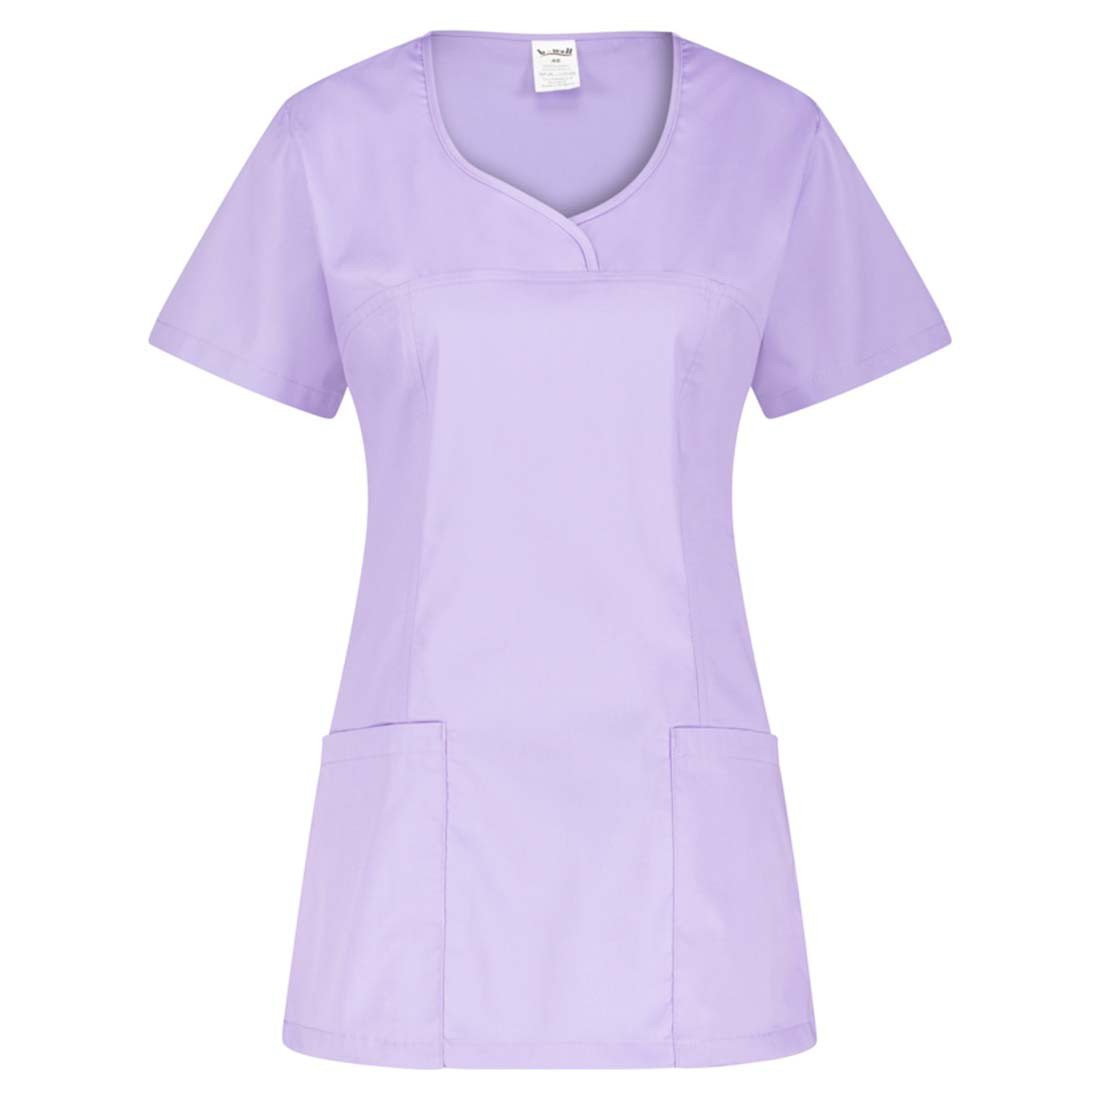 Tunica medica da donna INES - Abbigliamento di protezione